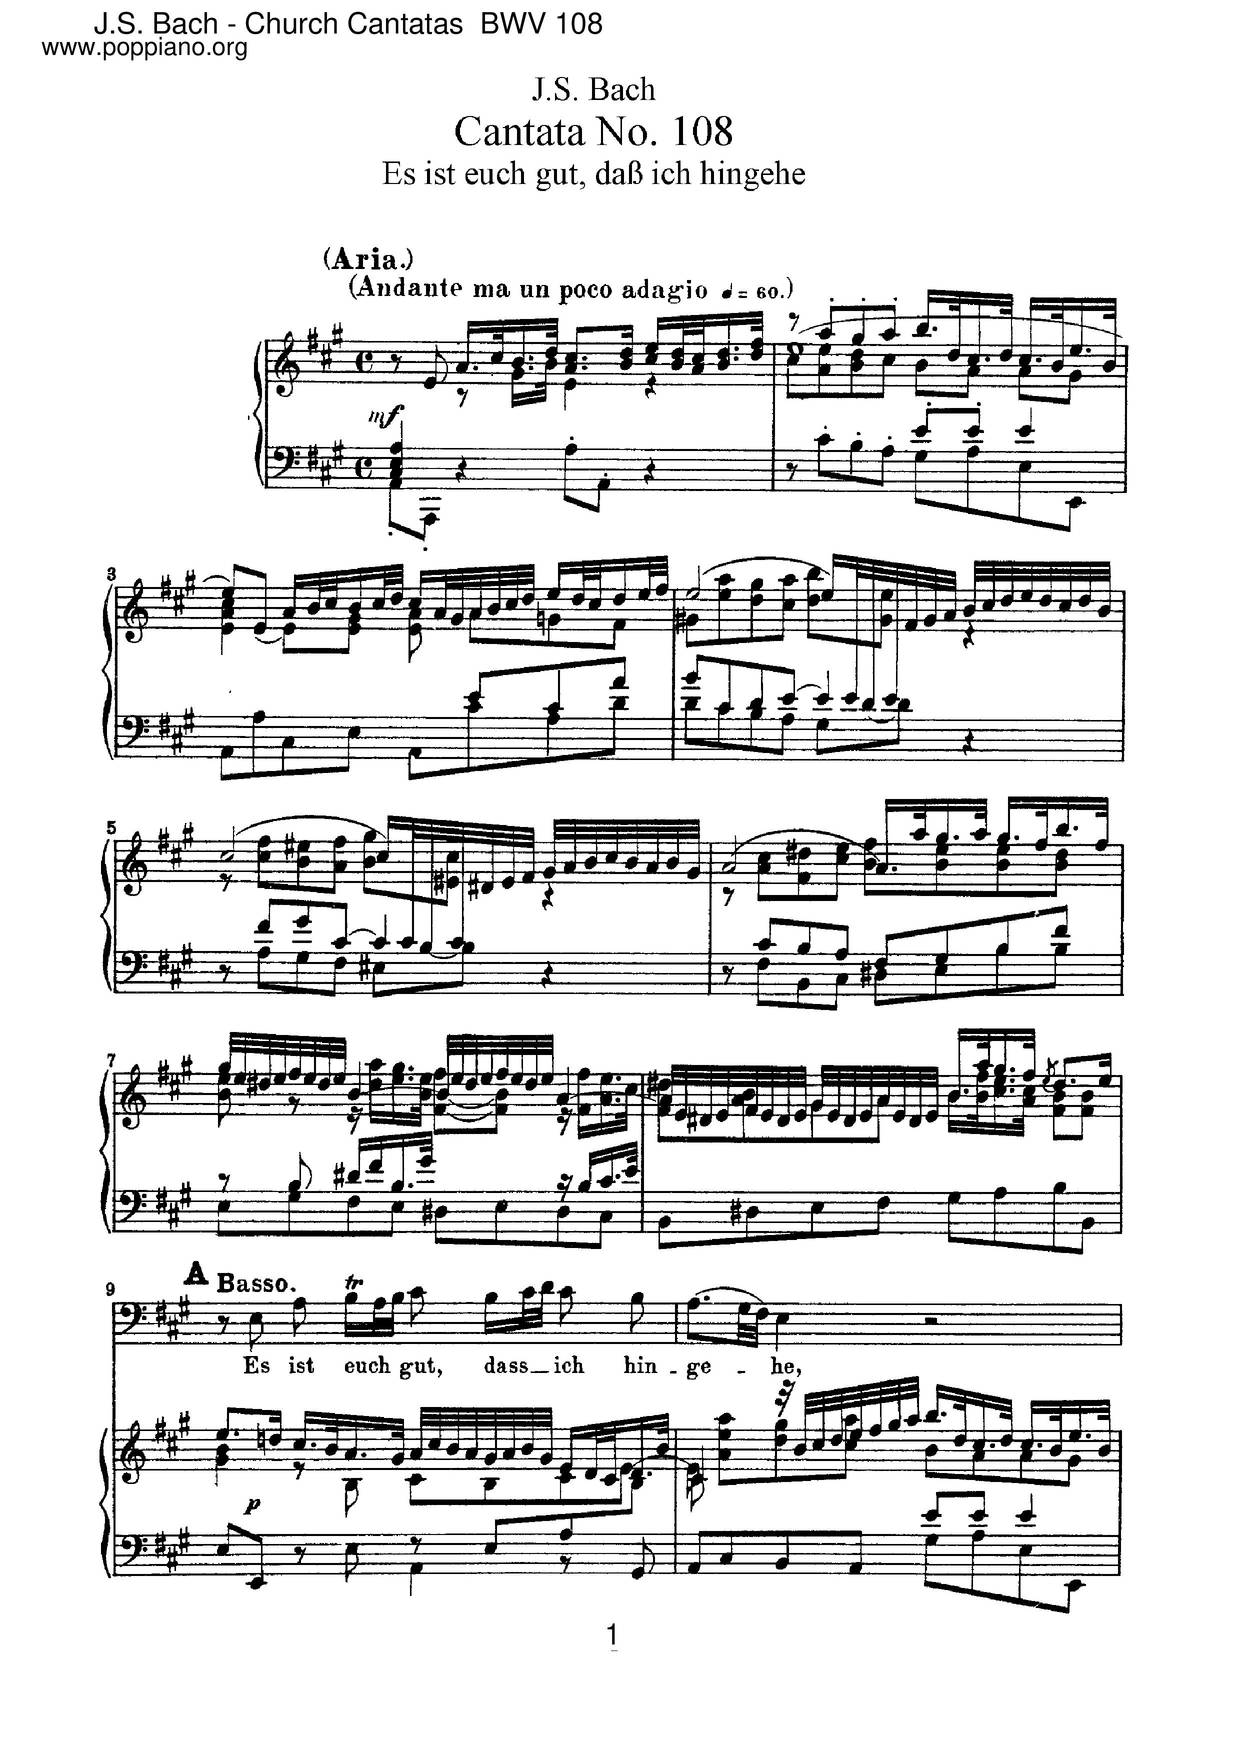 Es Ist Euch Gut, Dass Ich Hingehe, BWV 108 Score